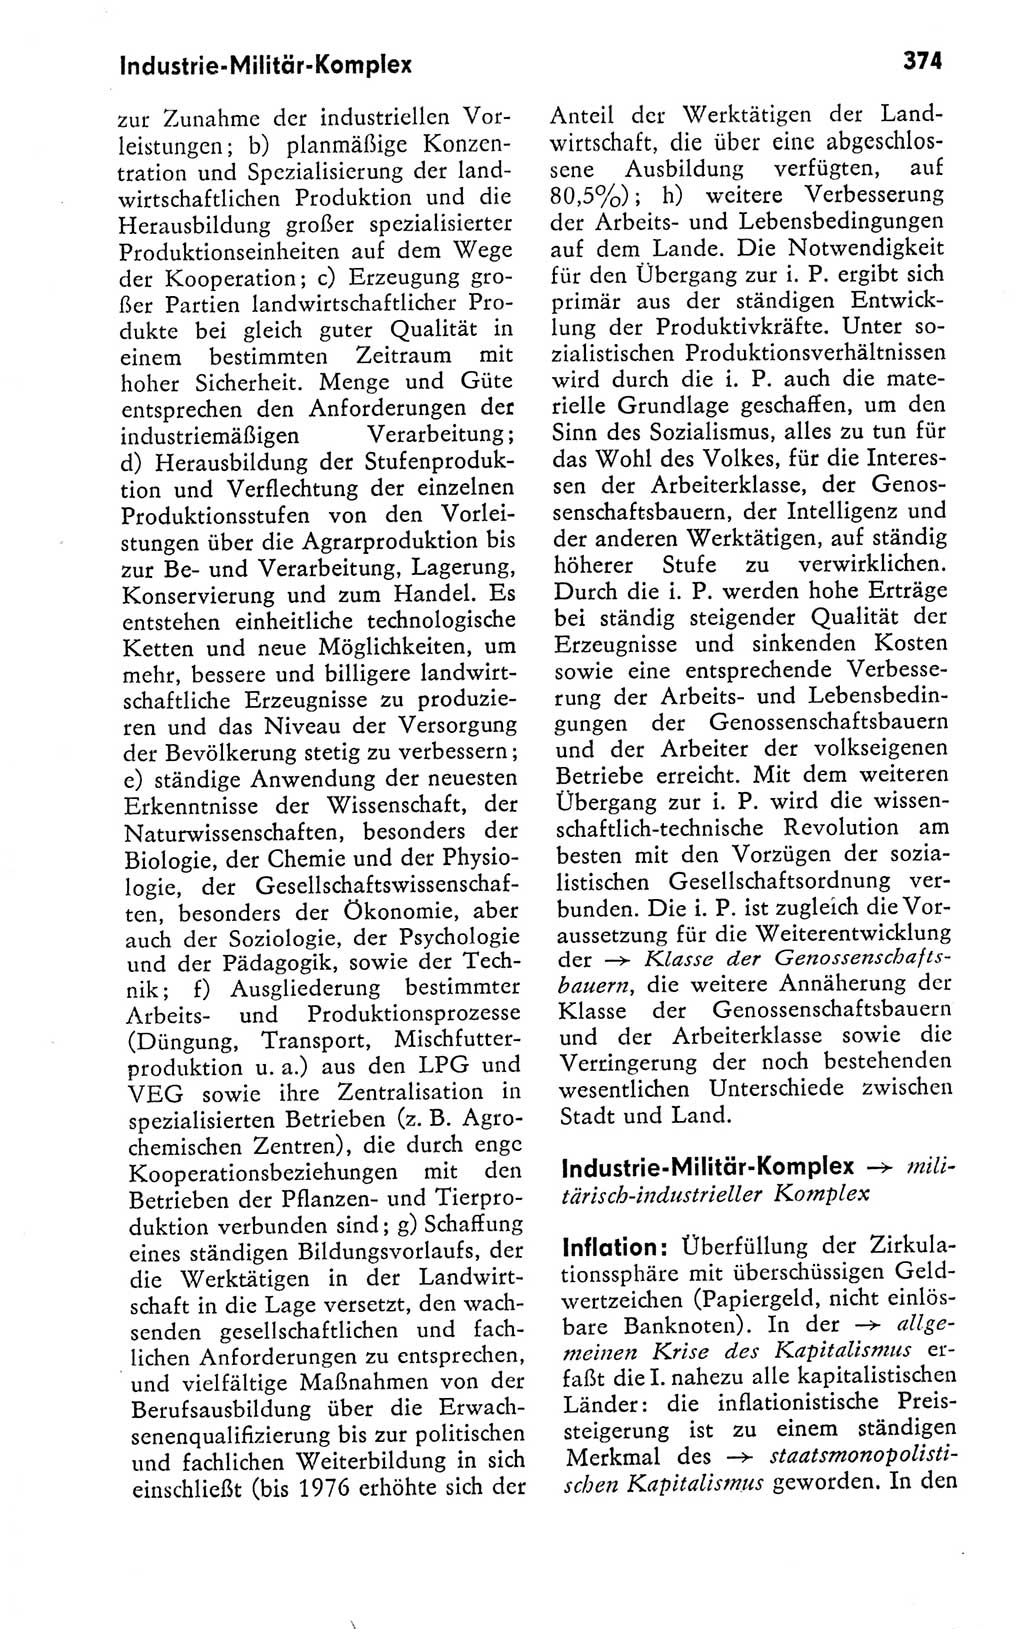 Kleines politisches Wörterbuch [Deutsche Demokratische Republik (DDR)] 1978, Seite 374 (Kl. pol. Wb. DDR 1978, S. 374)